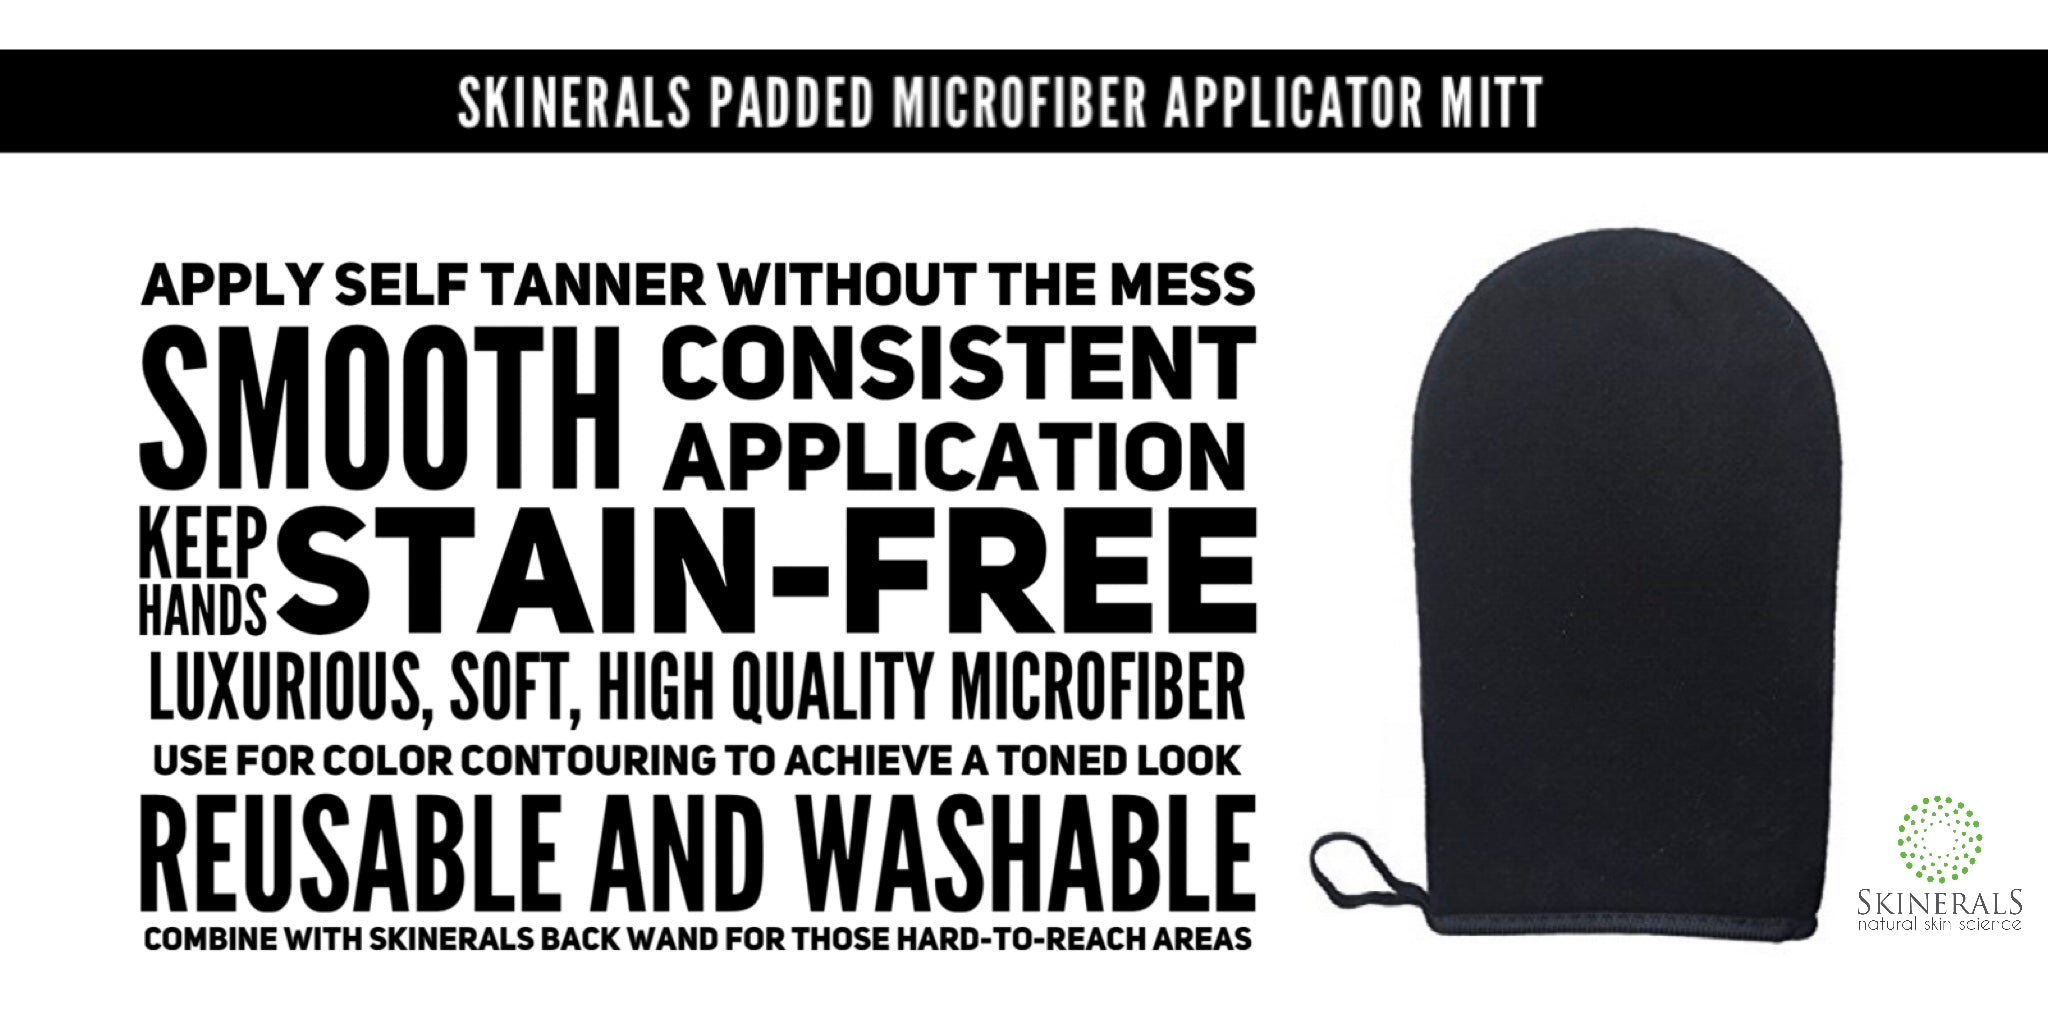 Skinerals Premium Microfiber Tanning Applicator Mitt